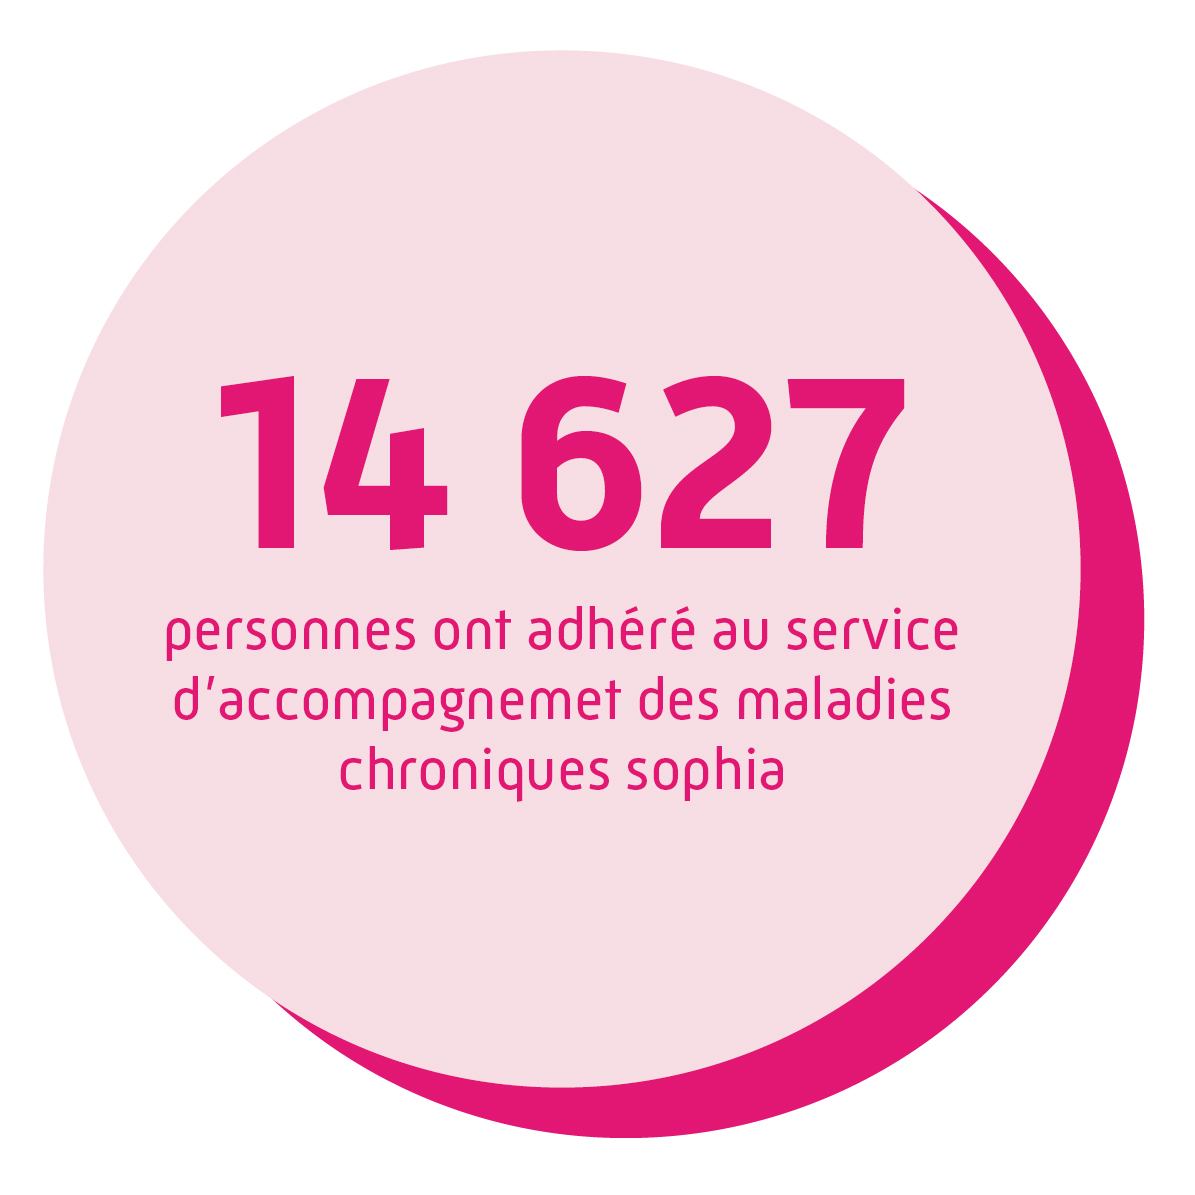 14 627 personnes ont adhéré au service d'accompagnement des maladies chronique sophia.